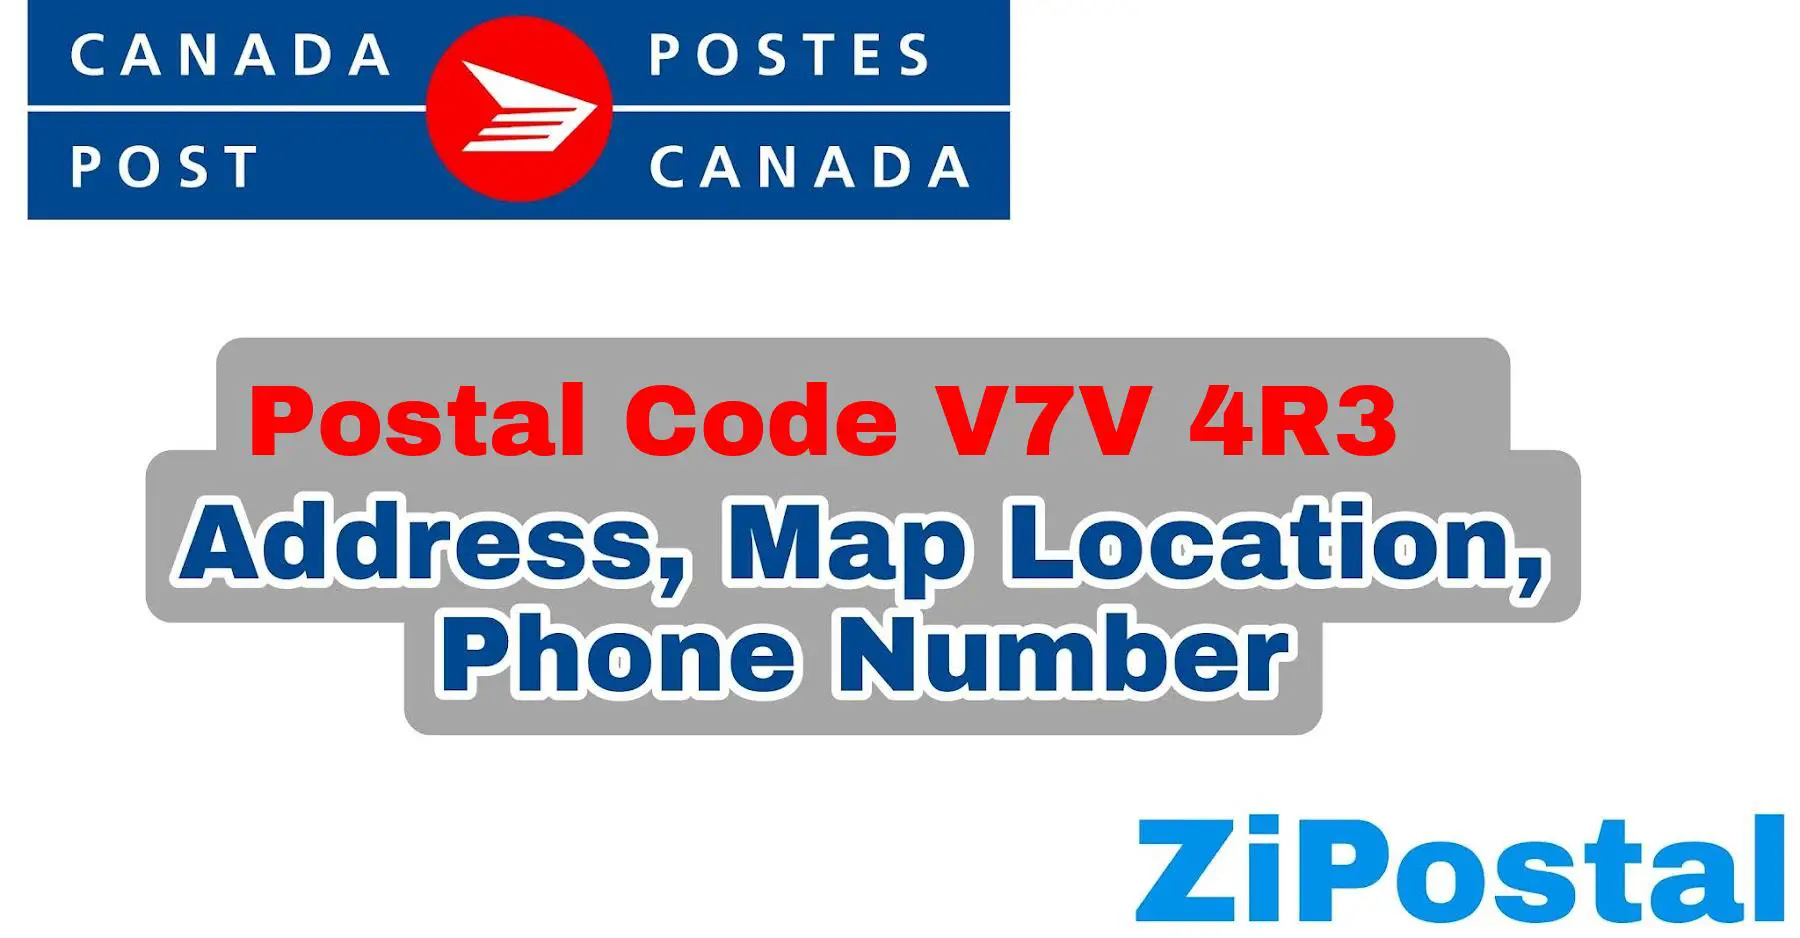 Postal Code V7V 4R3 Address Map Location and Phone Number